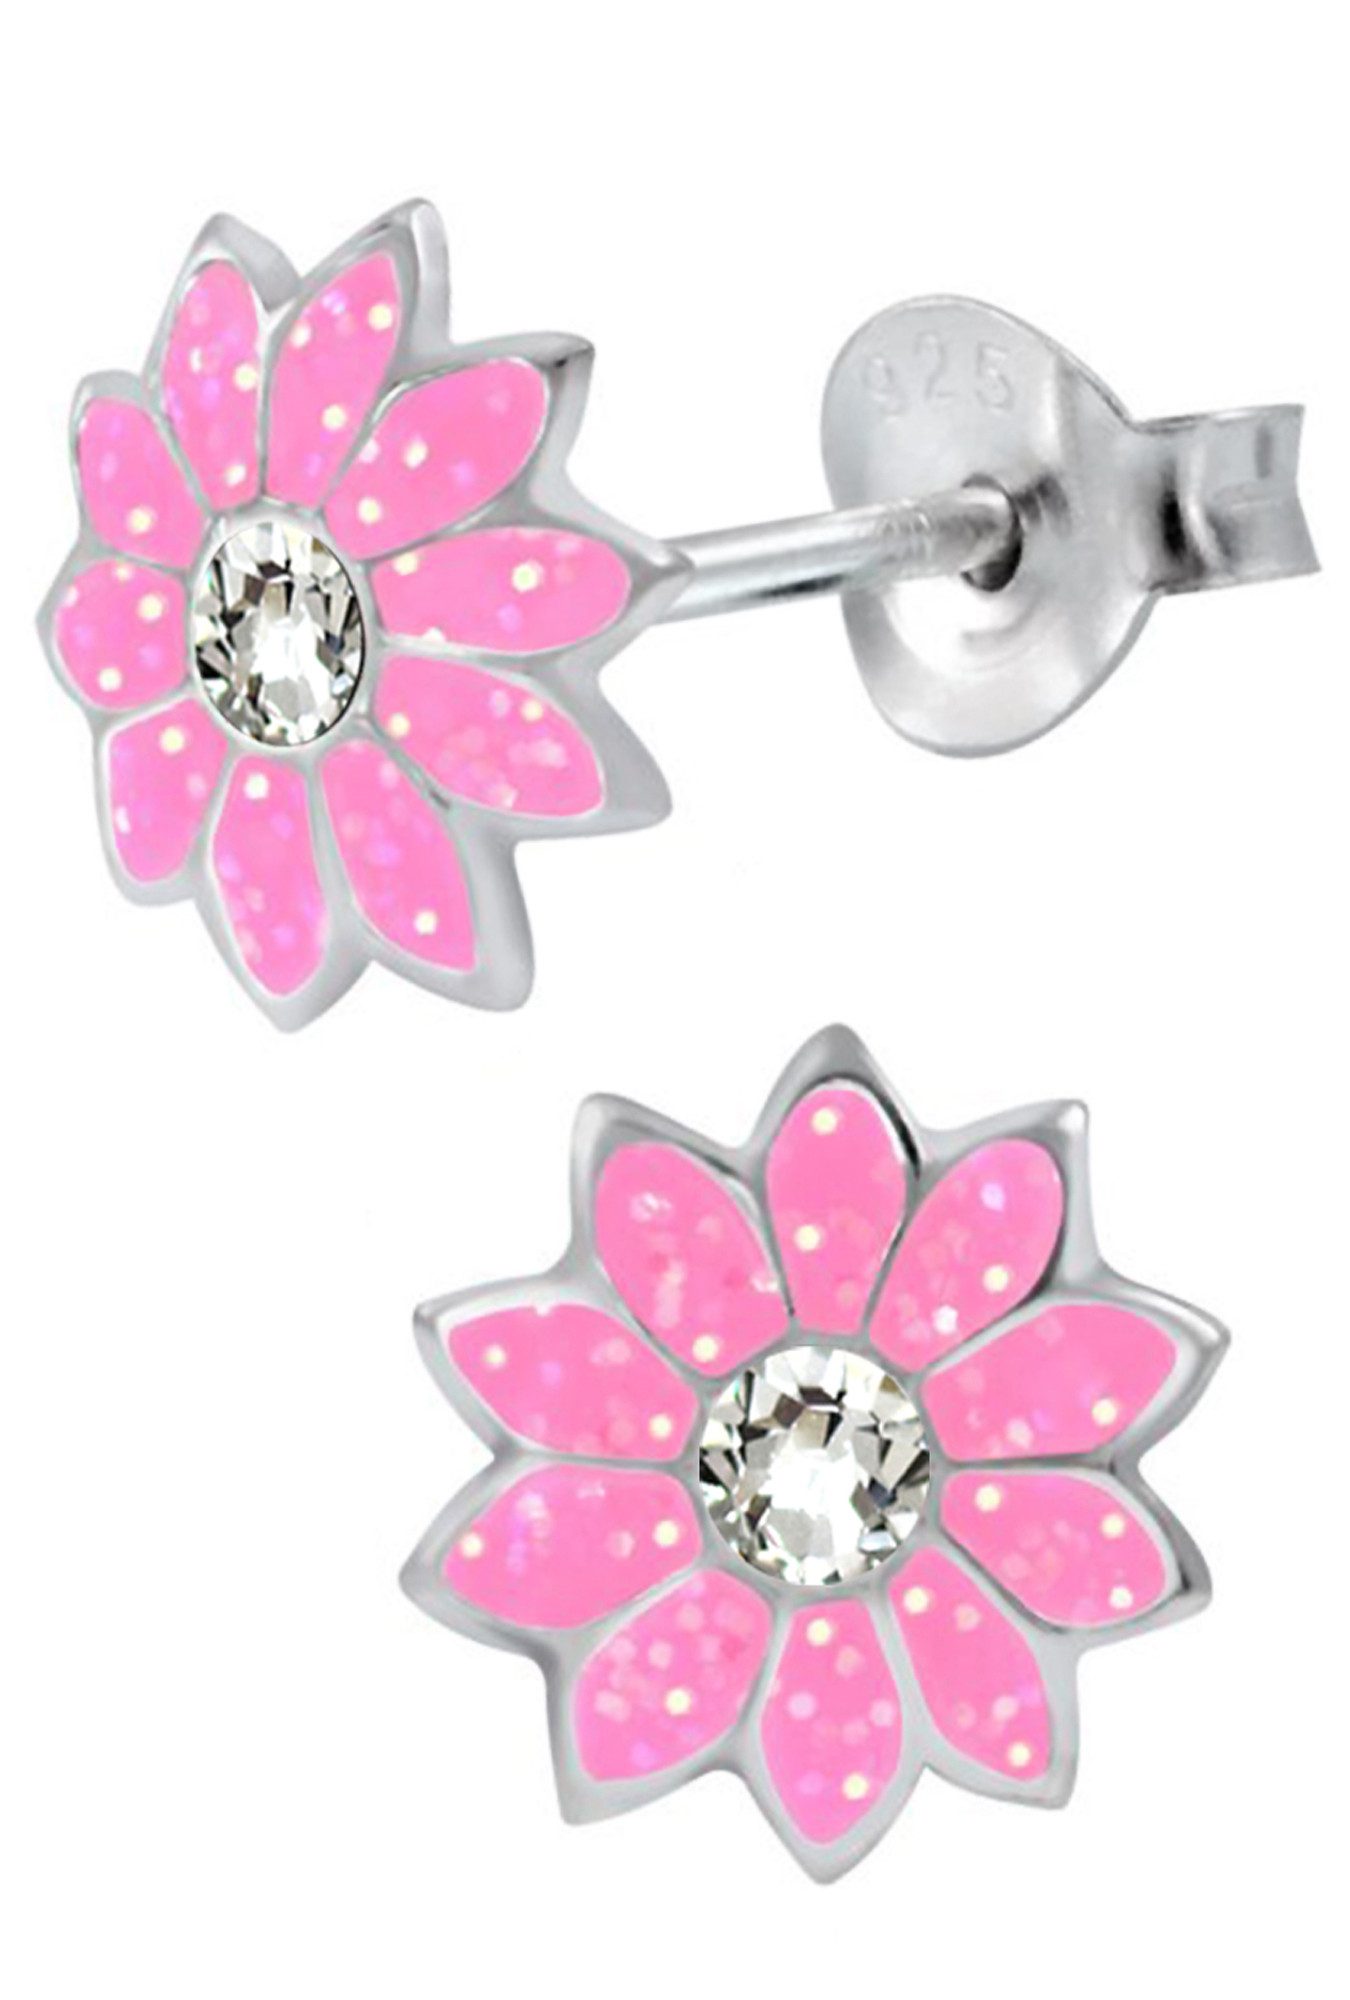 Limana Paar Ohrstecker 925 Silber rosa Glitzer Blumen Ohrringe für Kinder Mädchen, Kinderohrstecker Kinderohrringe Kinderschmuck